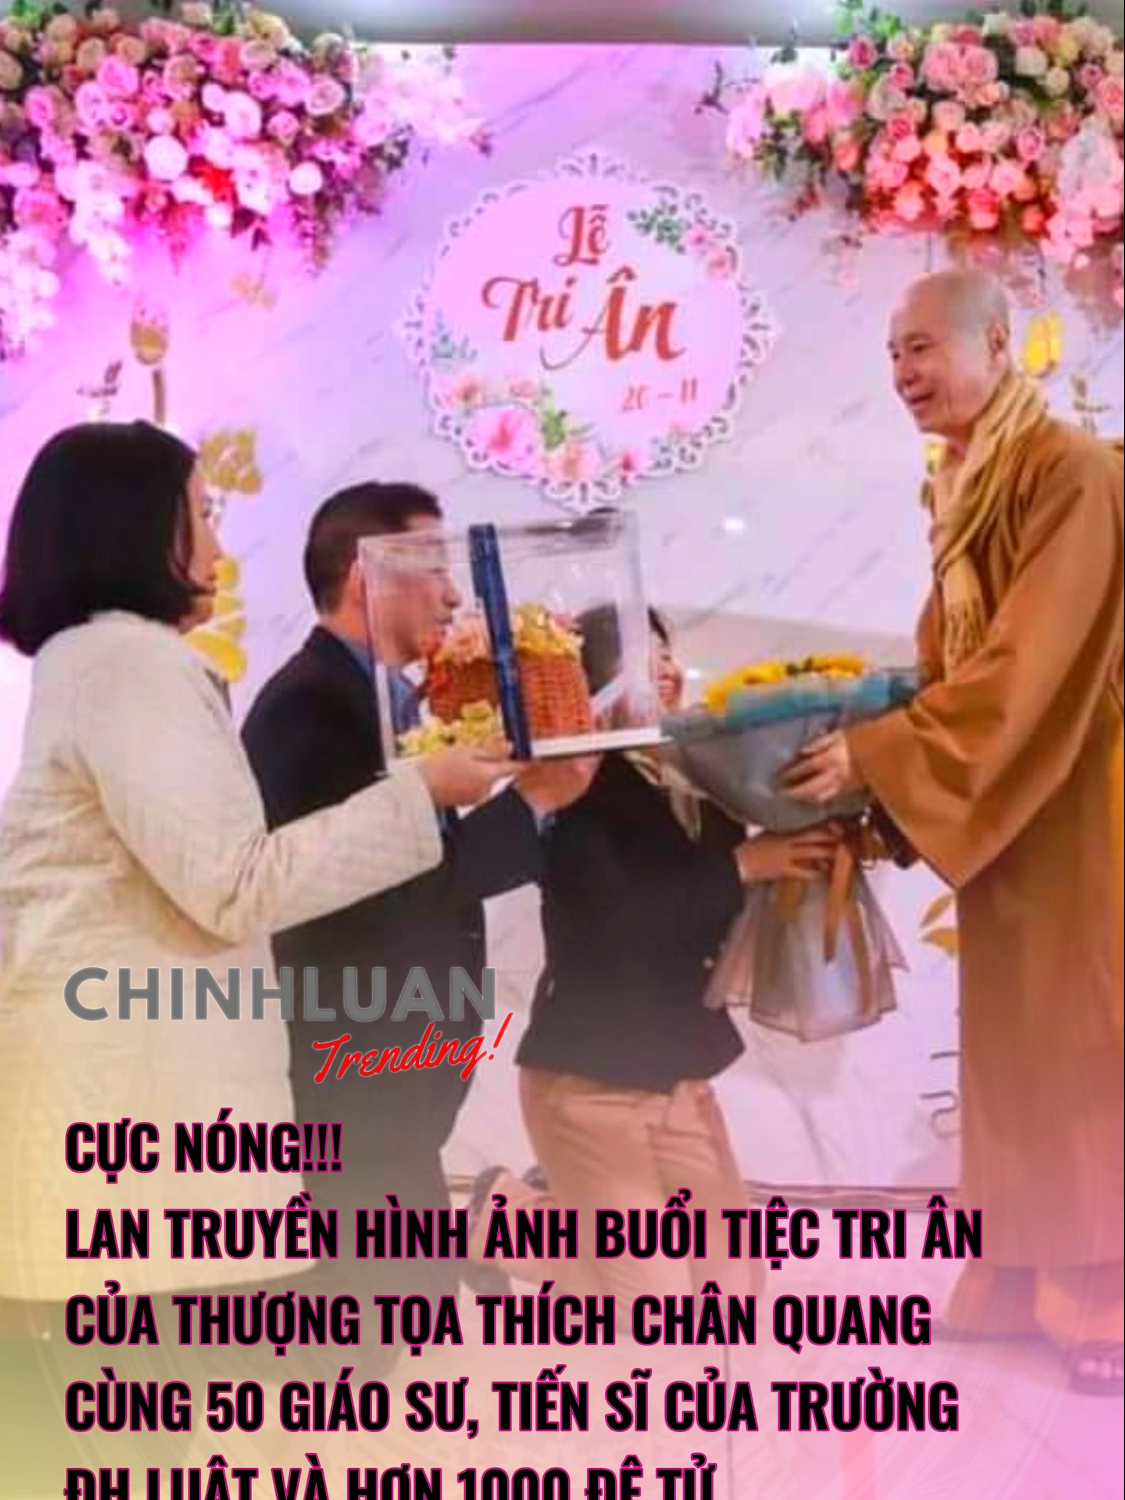 ️Lan truyền hình ảnh buổi tiệc Tri ân của Thượng tọa Thích Chân Quang cùng 50 Giáo sư, Tiến sĩ của trường ĐH Luật và hơn 1000 đệ tử. #ChinhluanTrending #tiktoknews #SaigonTV #tintuc #thichchanquang #vuongtanviet #daihocluathanoi